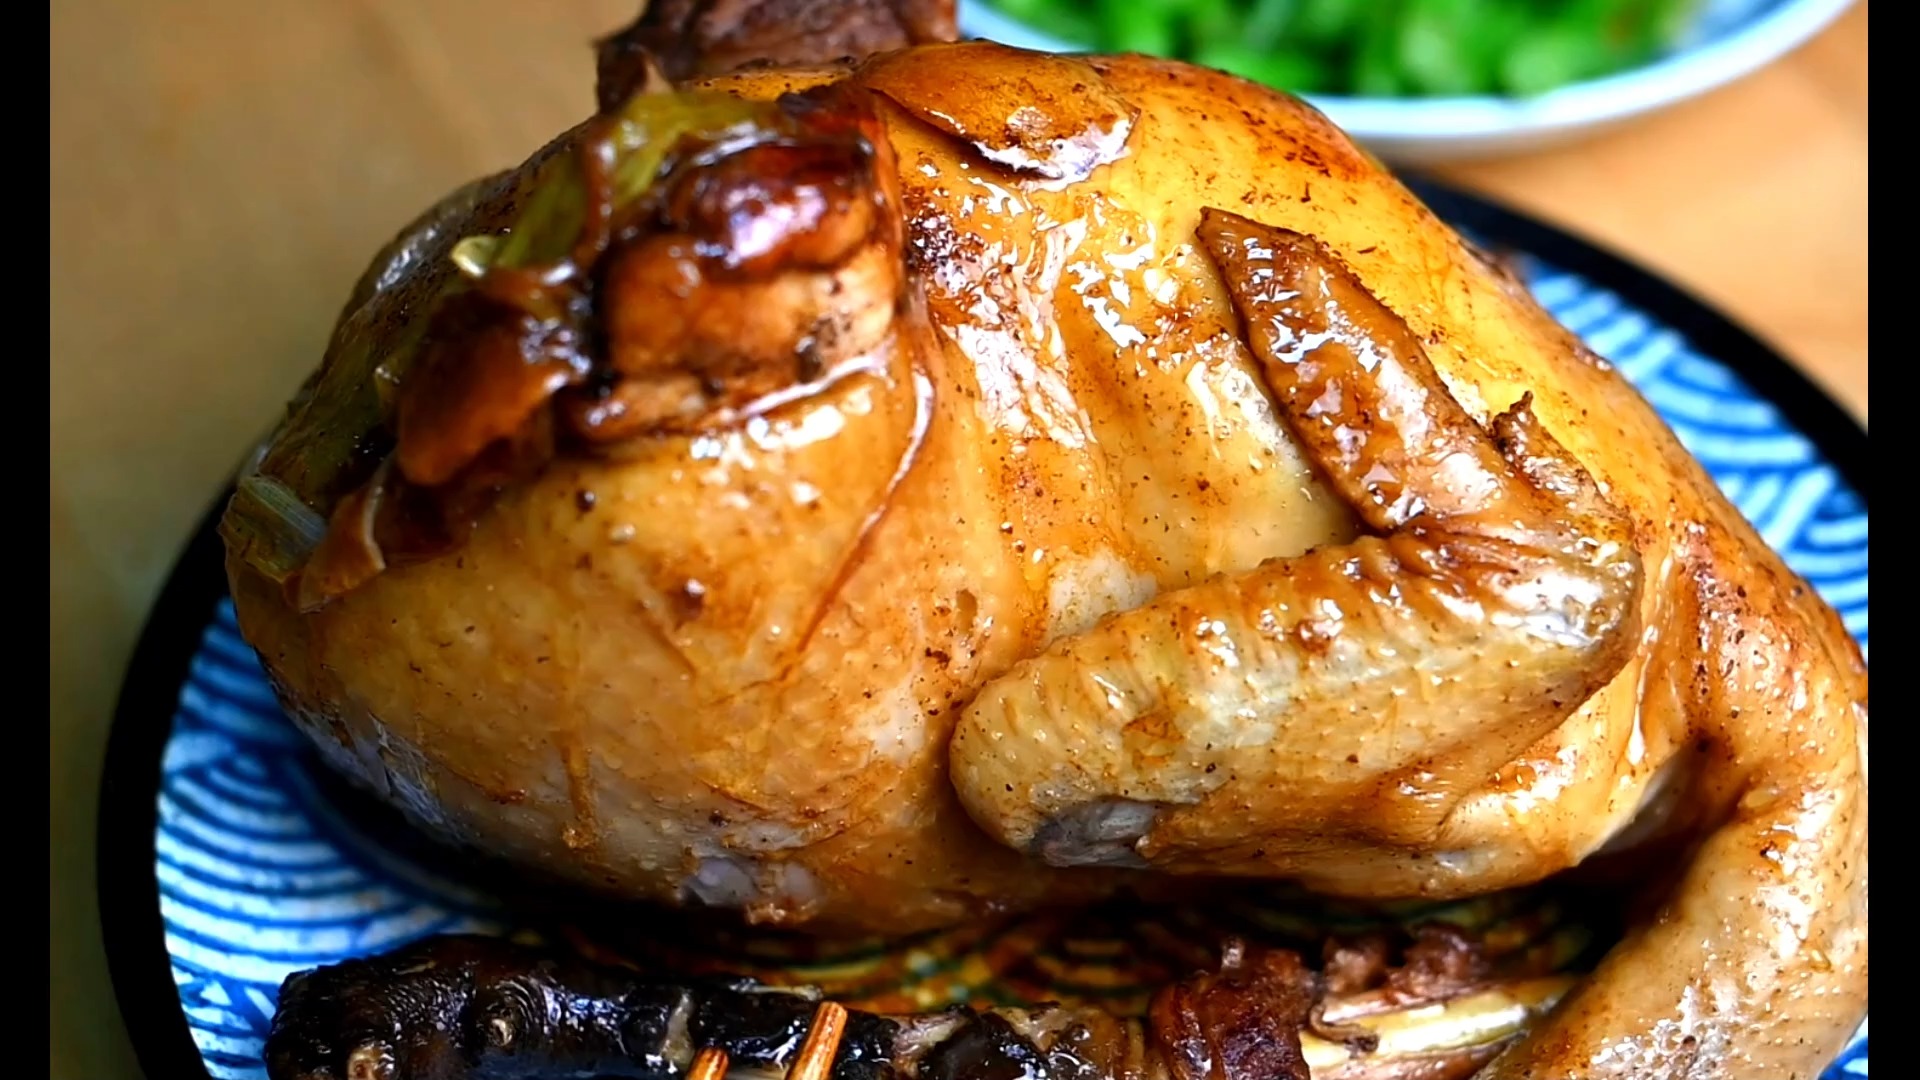 简单易做的懒人版豉油鸡，一个电饭锅就可以做了#美食 #生活充满仪式感 